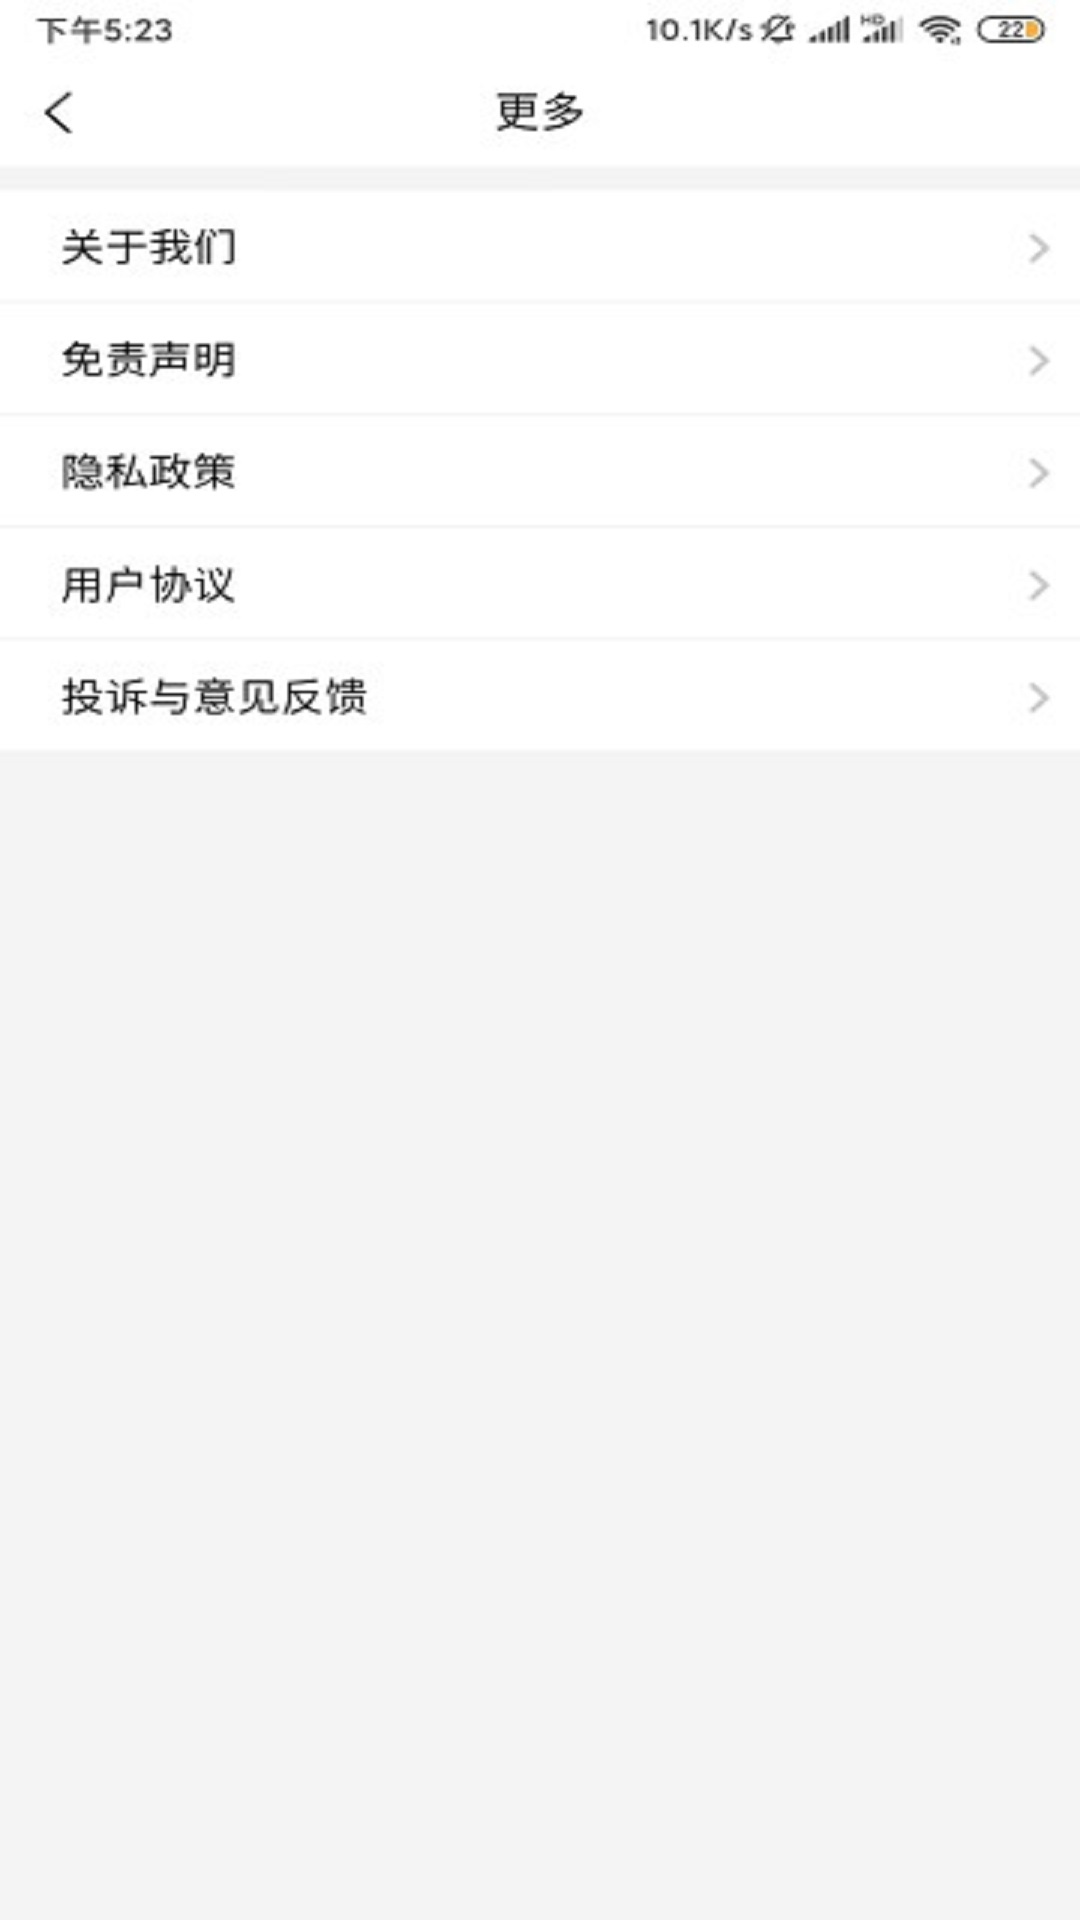 浙大儿院App最新版在线下载 截图3